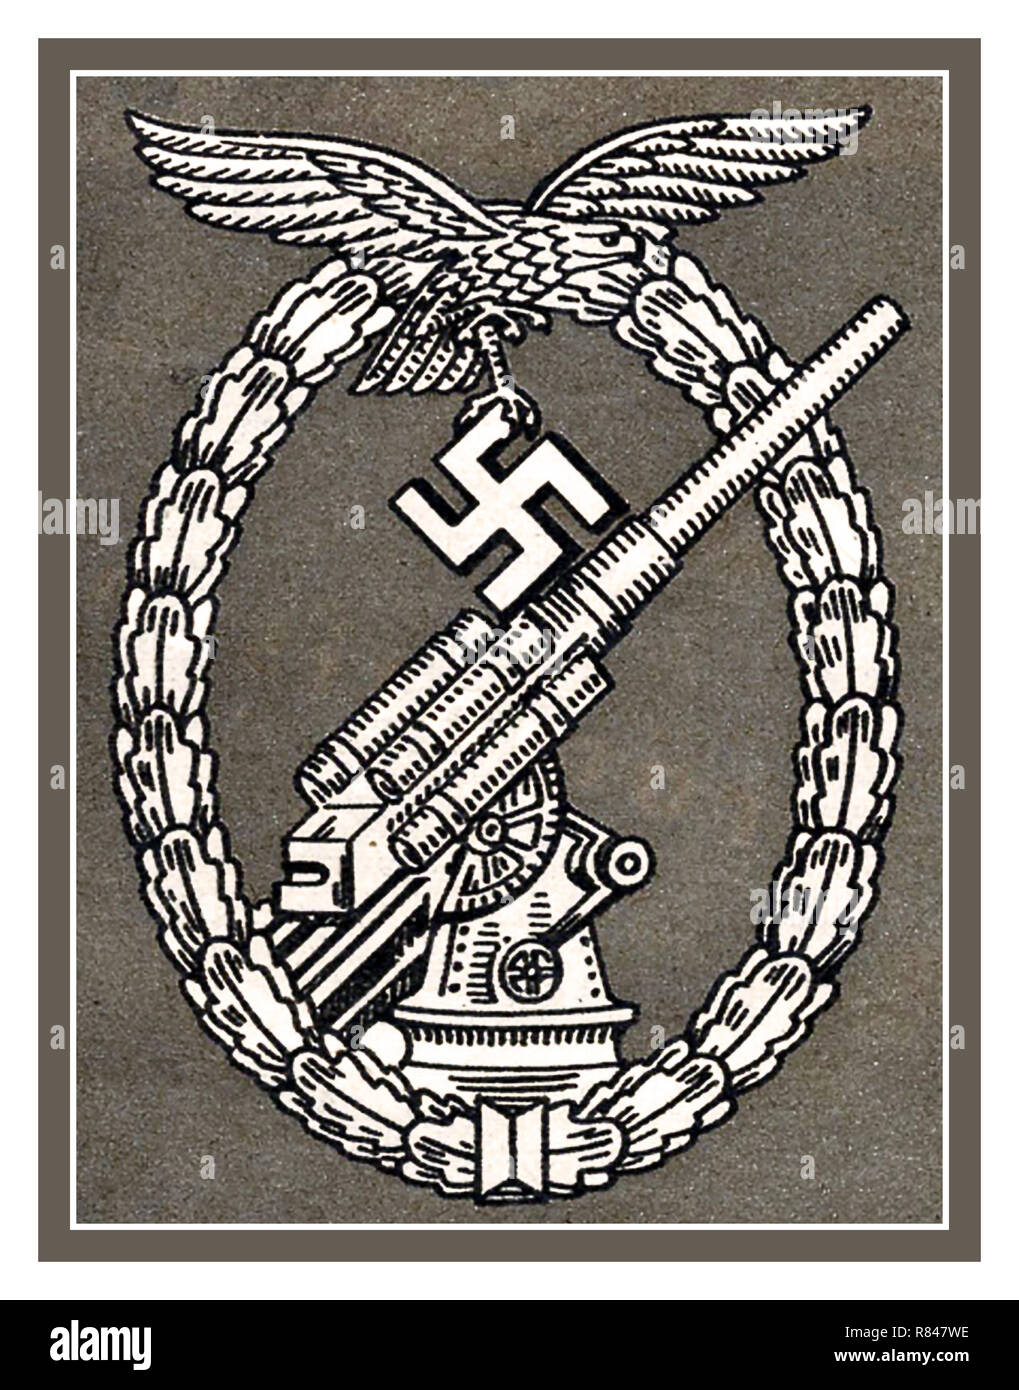 WW2 1940 La bataille de Swastika et badge Eagle Award pour la Wehrmacht de l'Allemagne nazie, la défense aérienne des artilleurs Flak et le tir contre les avions de chasse et de bombardement allié Banque D'Images